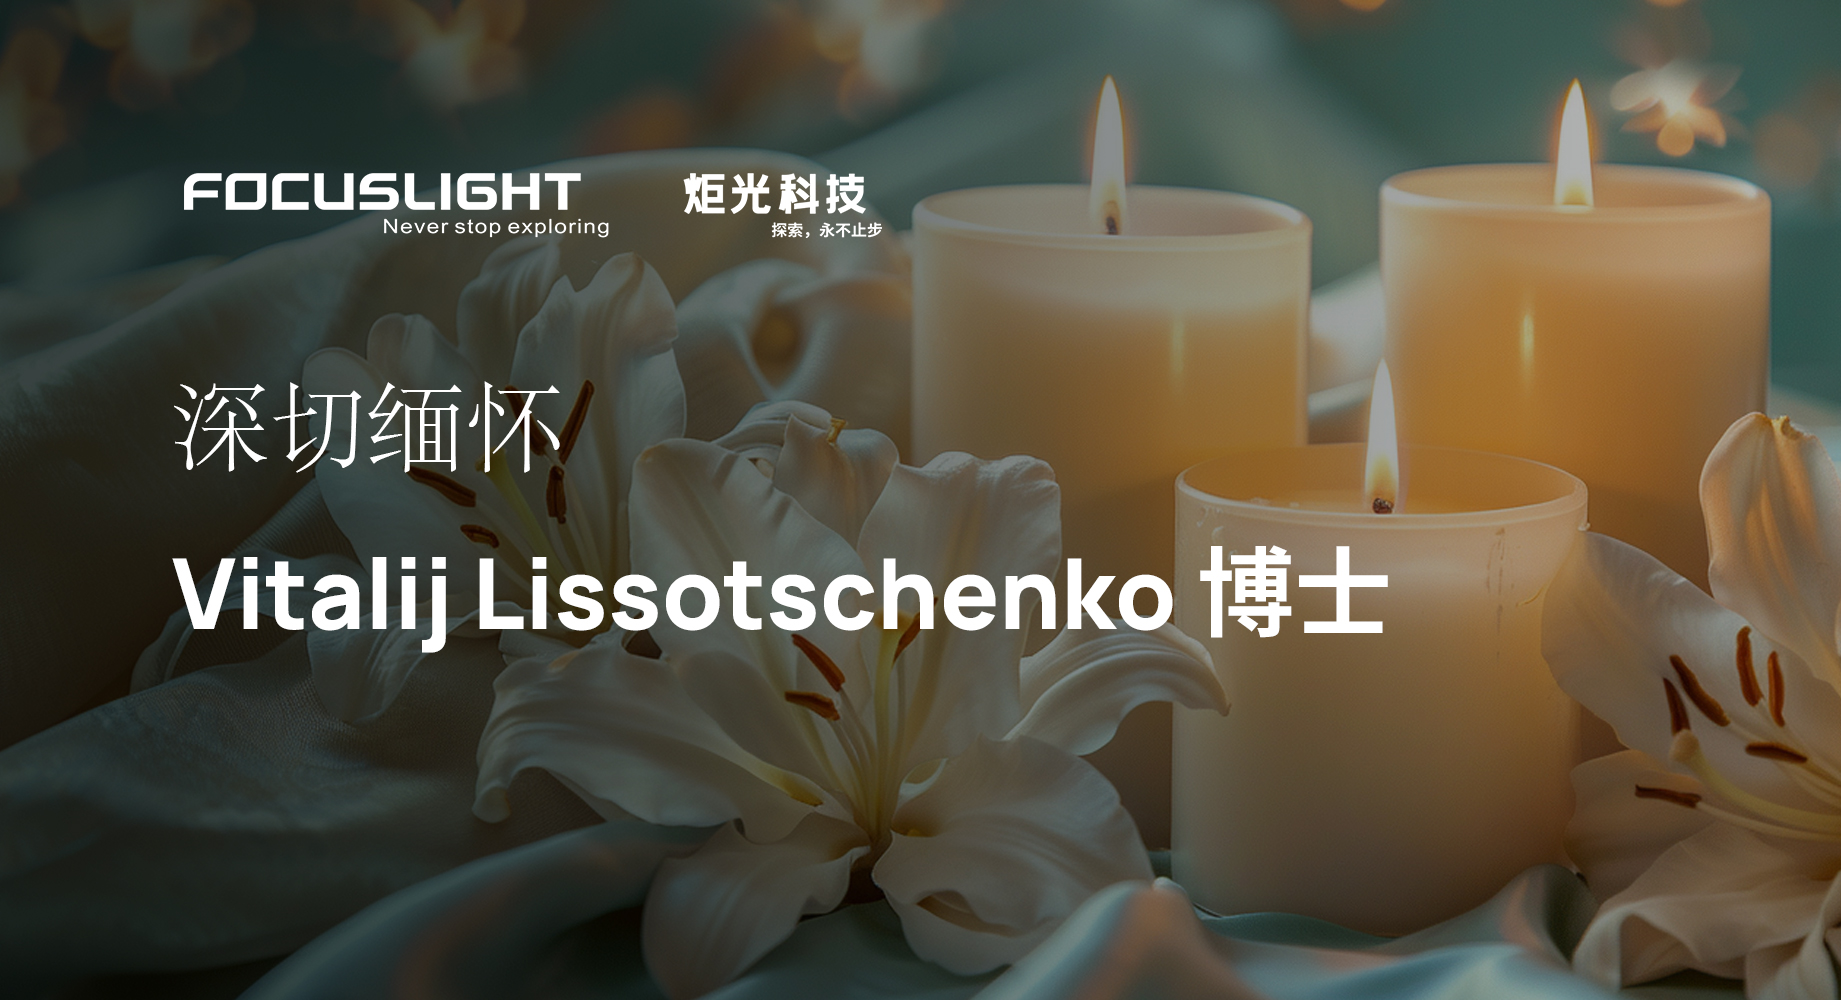 In Loving Memory of Dr. Vitalij Lissotschenko